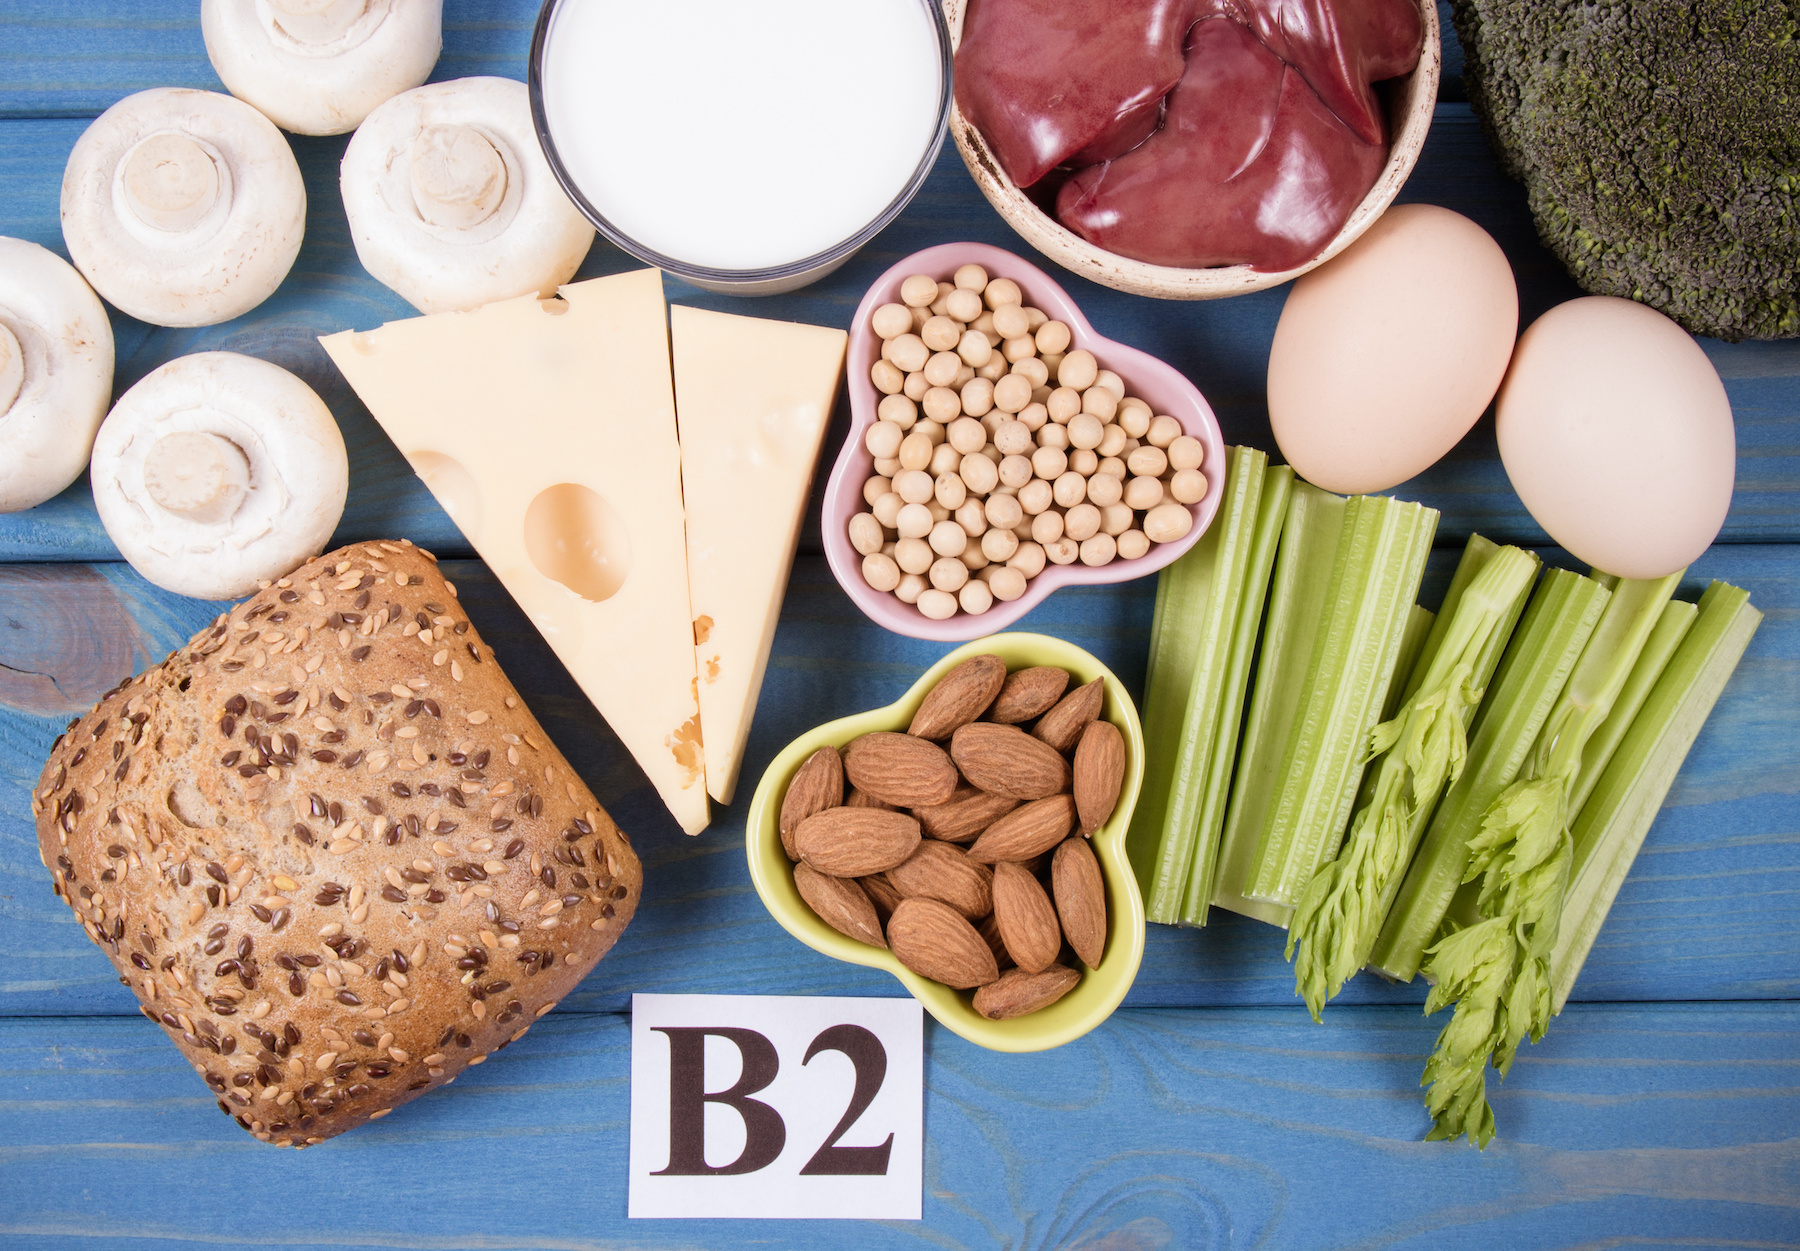 La vitamine B2 est surtout présente dans les viandes, le fromage, les œufs ou les produits céréaliers. © morissfoto, Adobe Stock